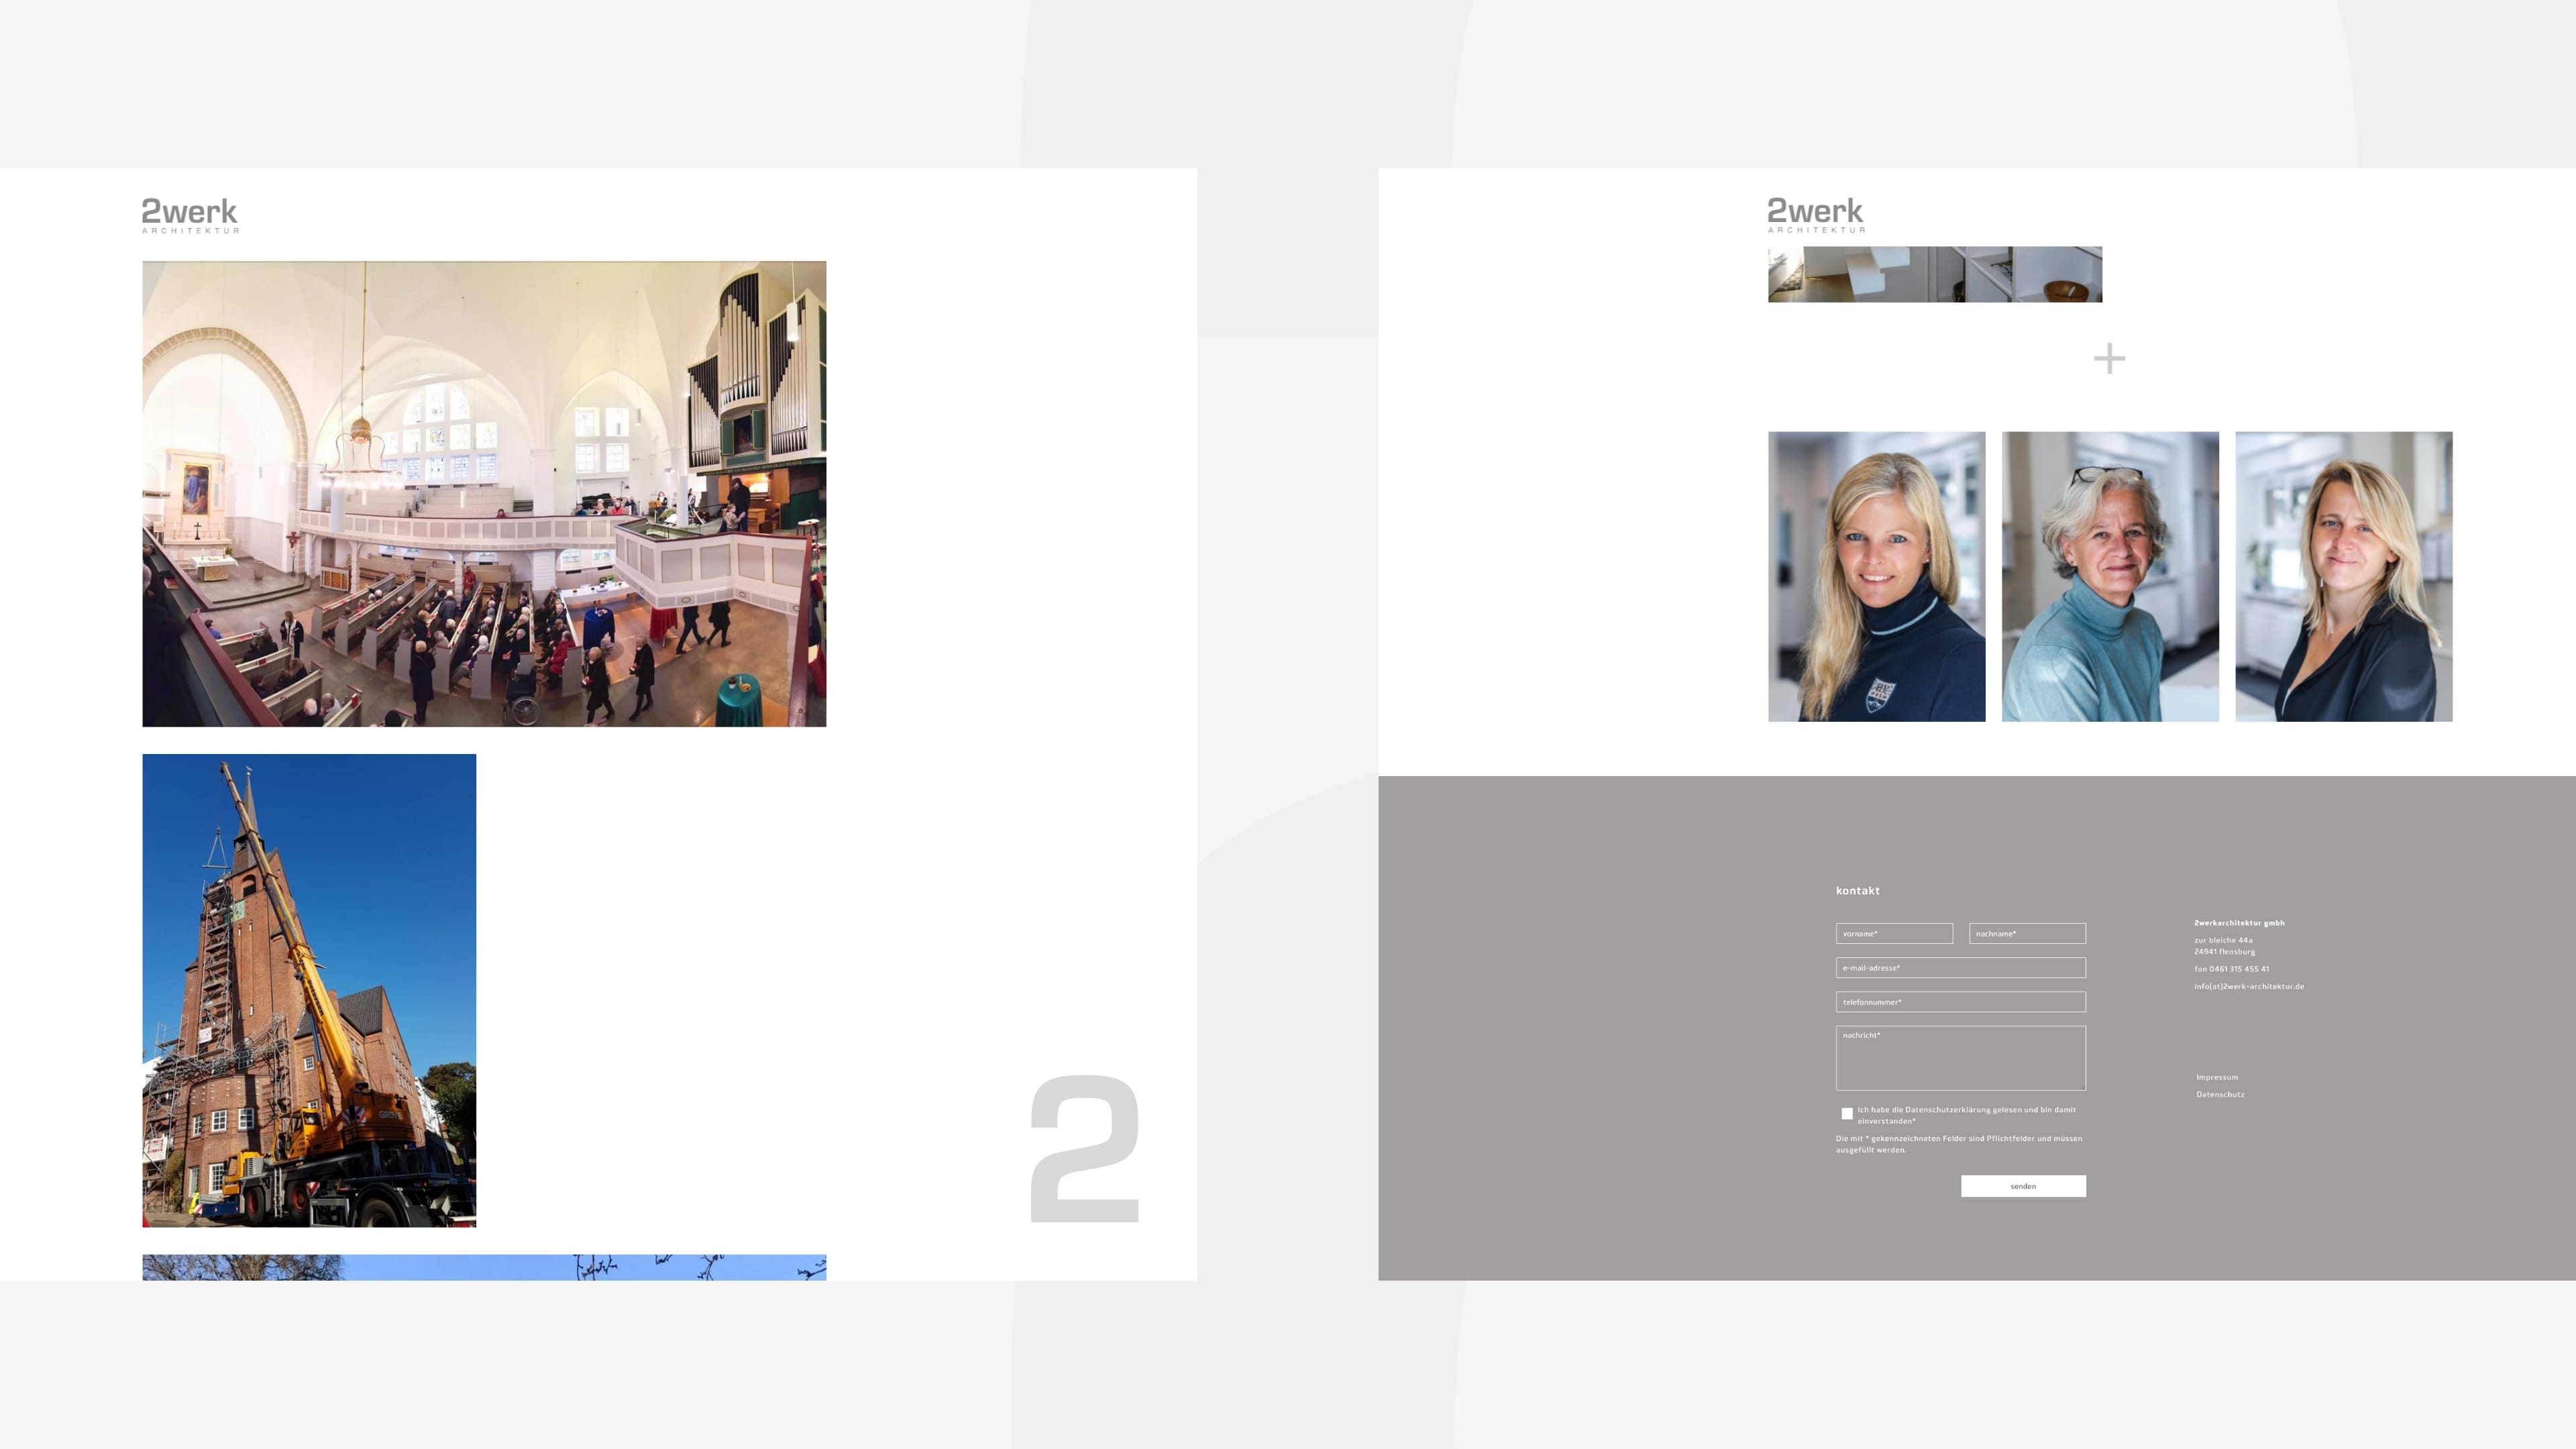 Zwei Screenshots der Website 2werk-architektur.de mit Fotos einer Kirche und von Geschäftsführerinnen sowie Text